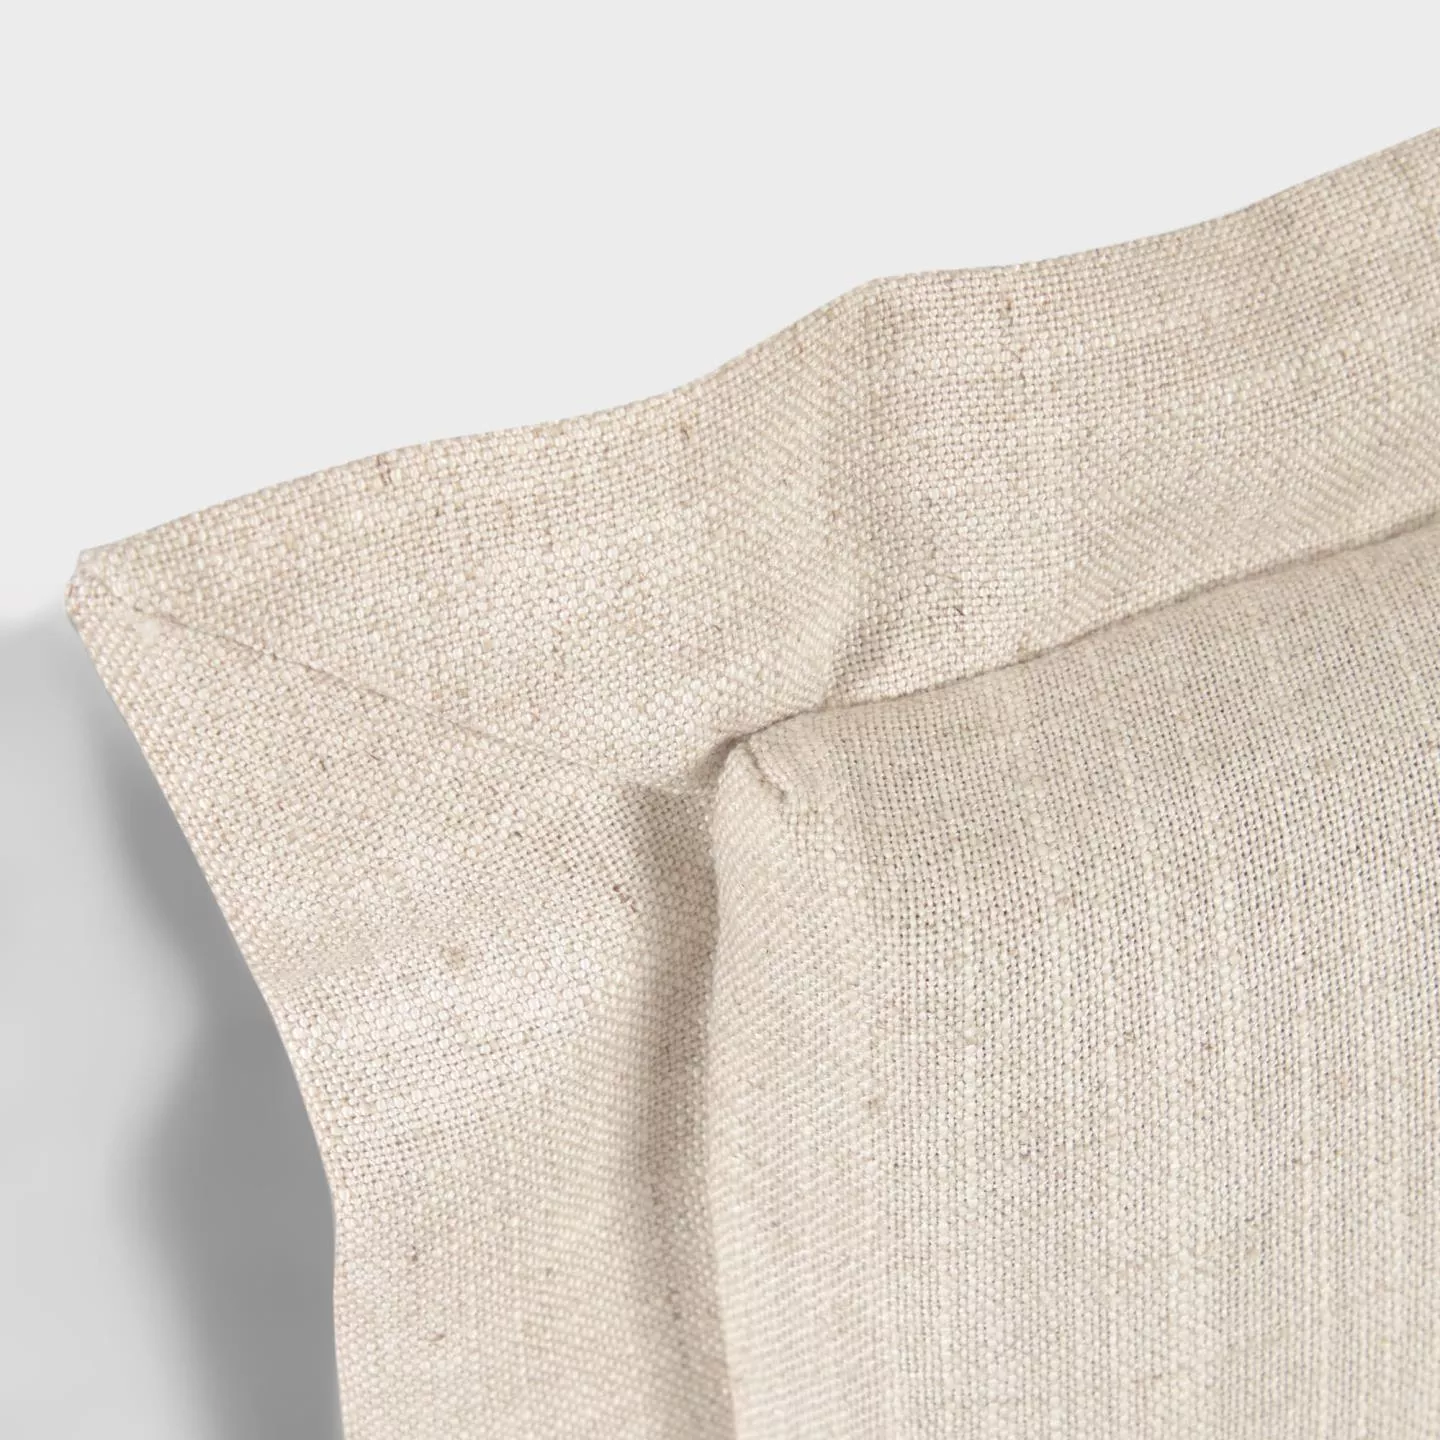 Изголовье La Forma лен белого цвета Tanit со съемным чехлом 106 x 106 см